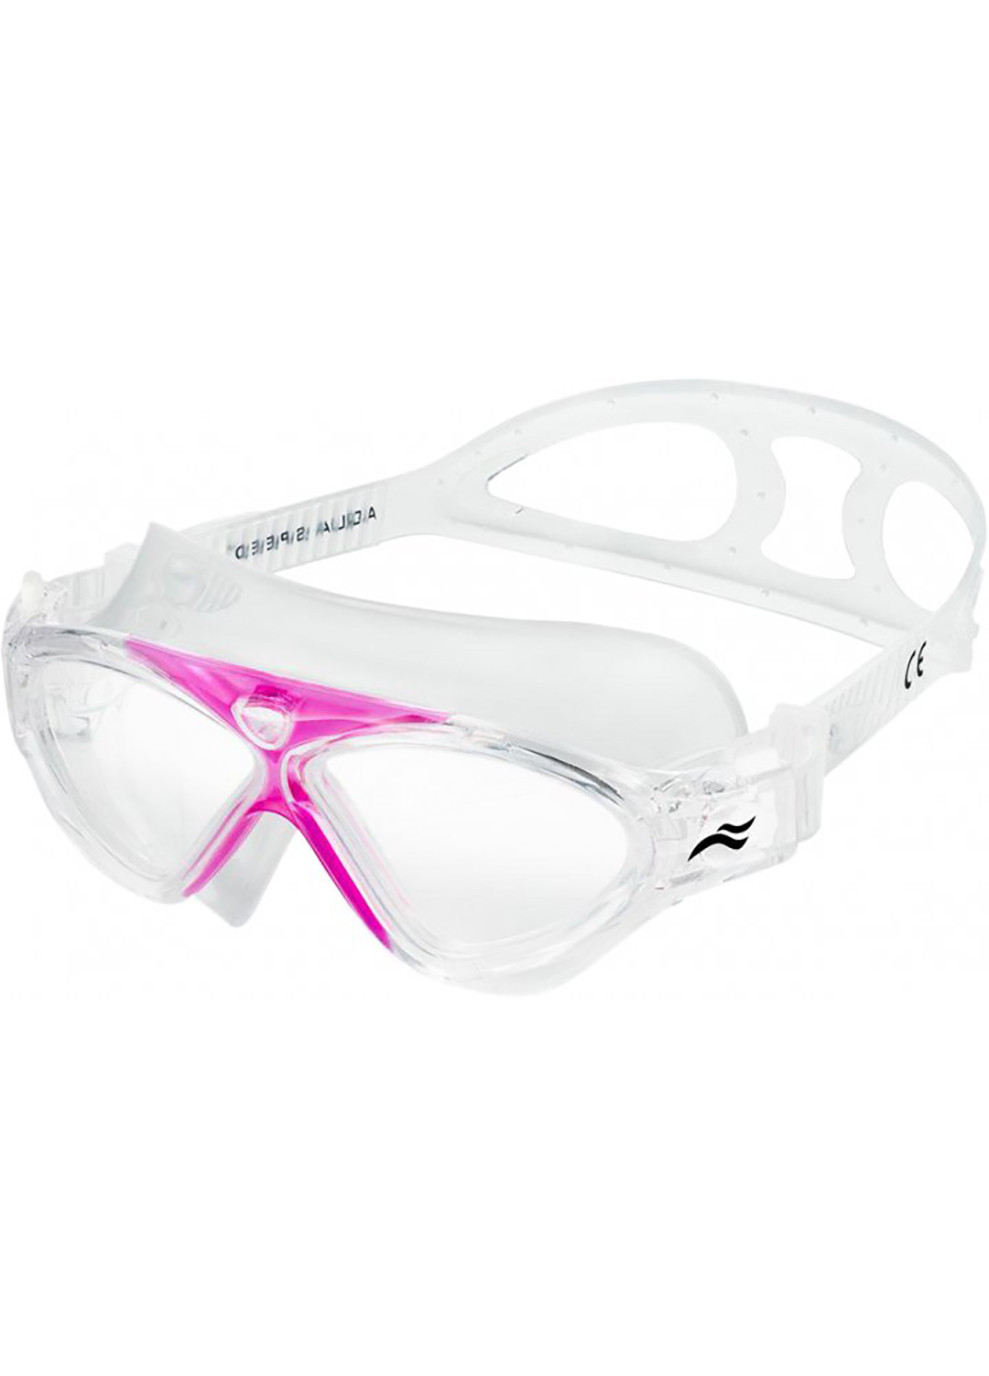 Очки для плавания ZEFIR 5871 прозрачные, розовые Дит OSFM 079-03 Aqua Speed (259215195)